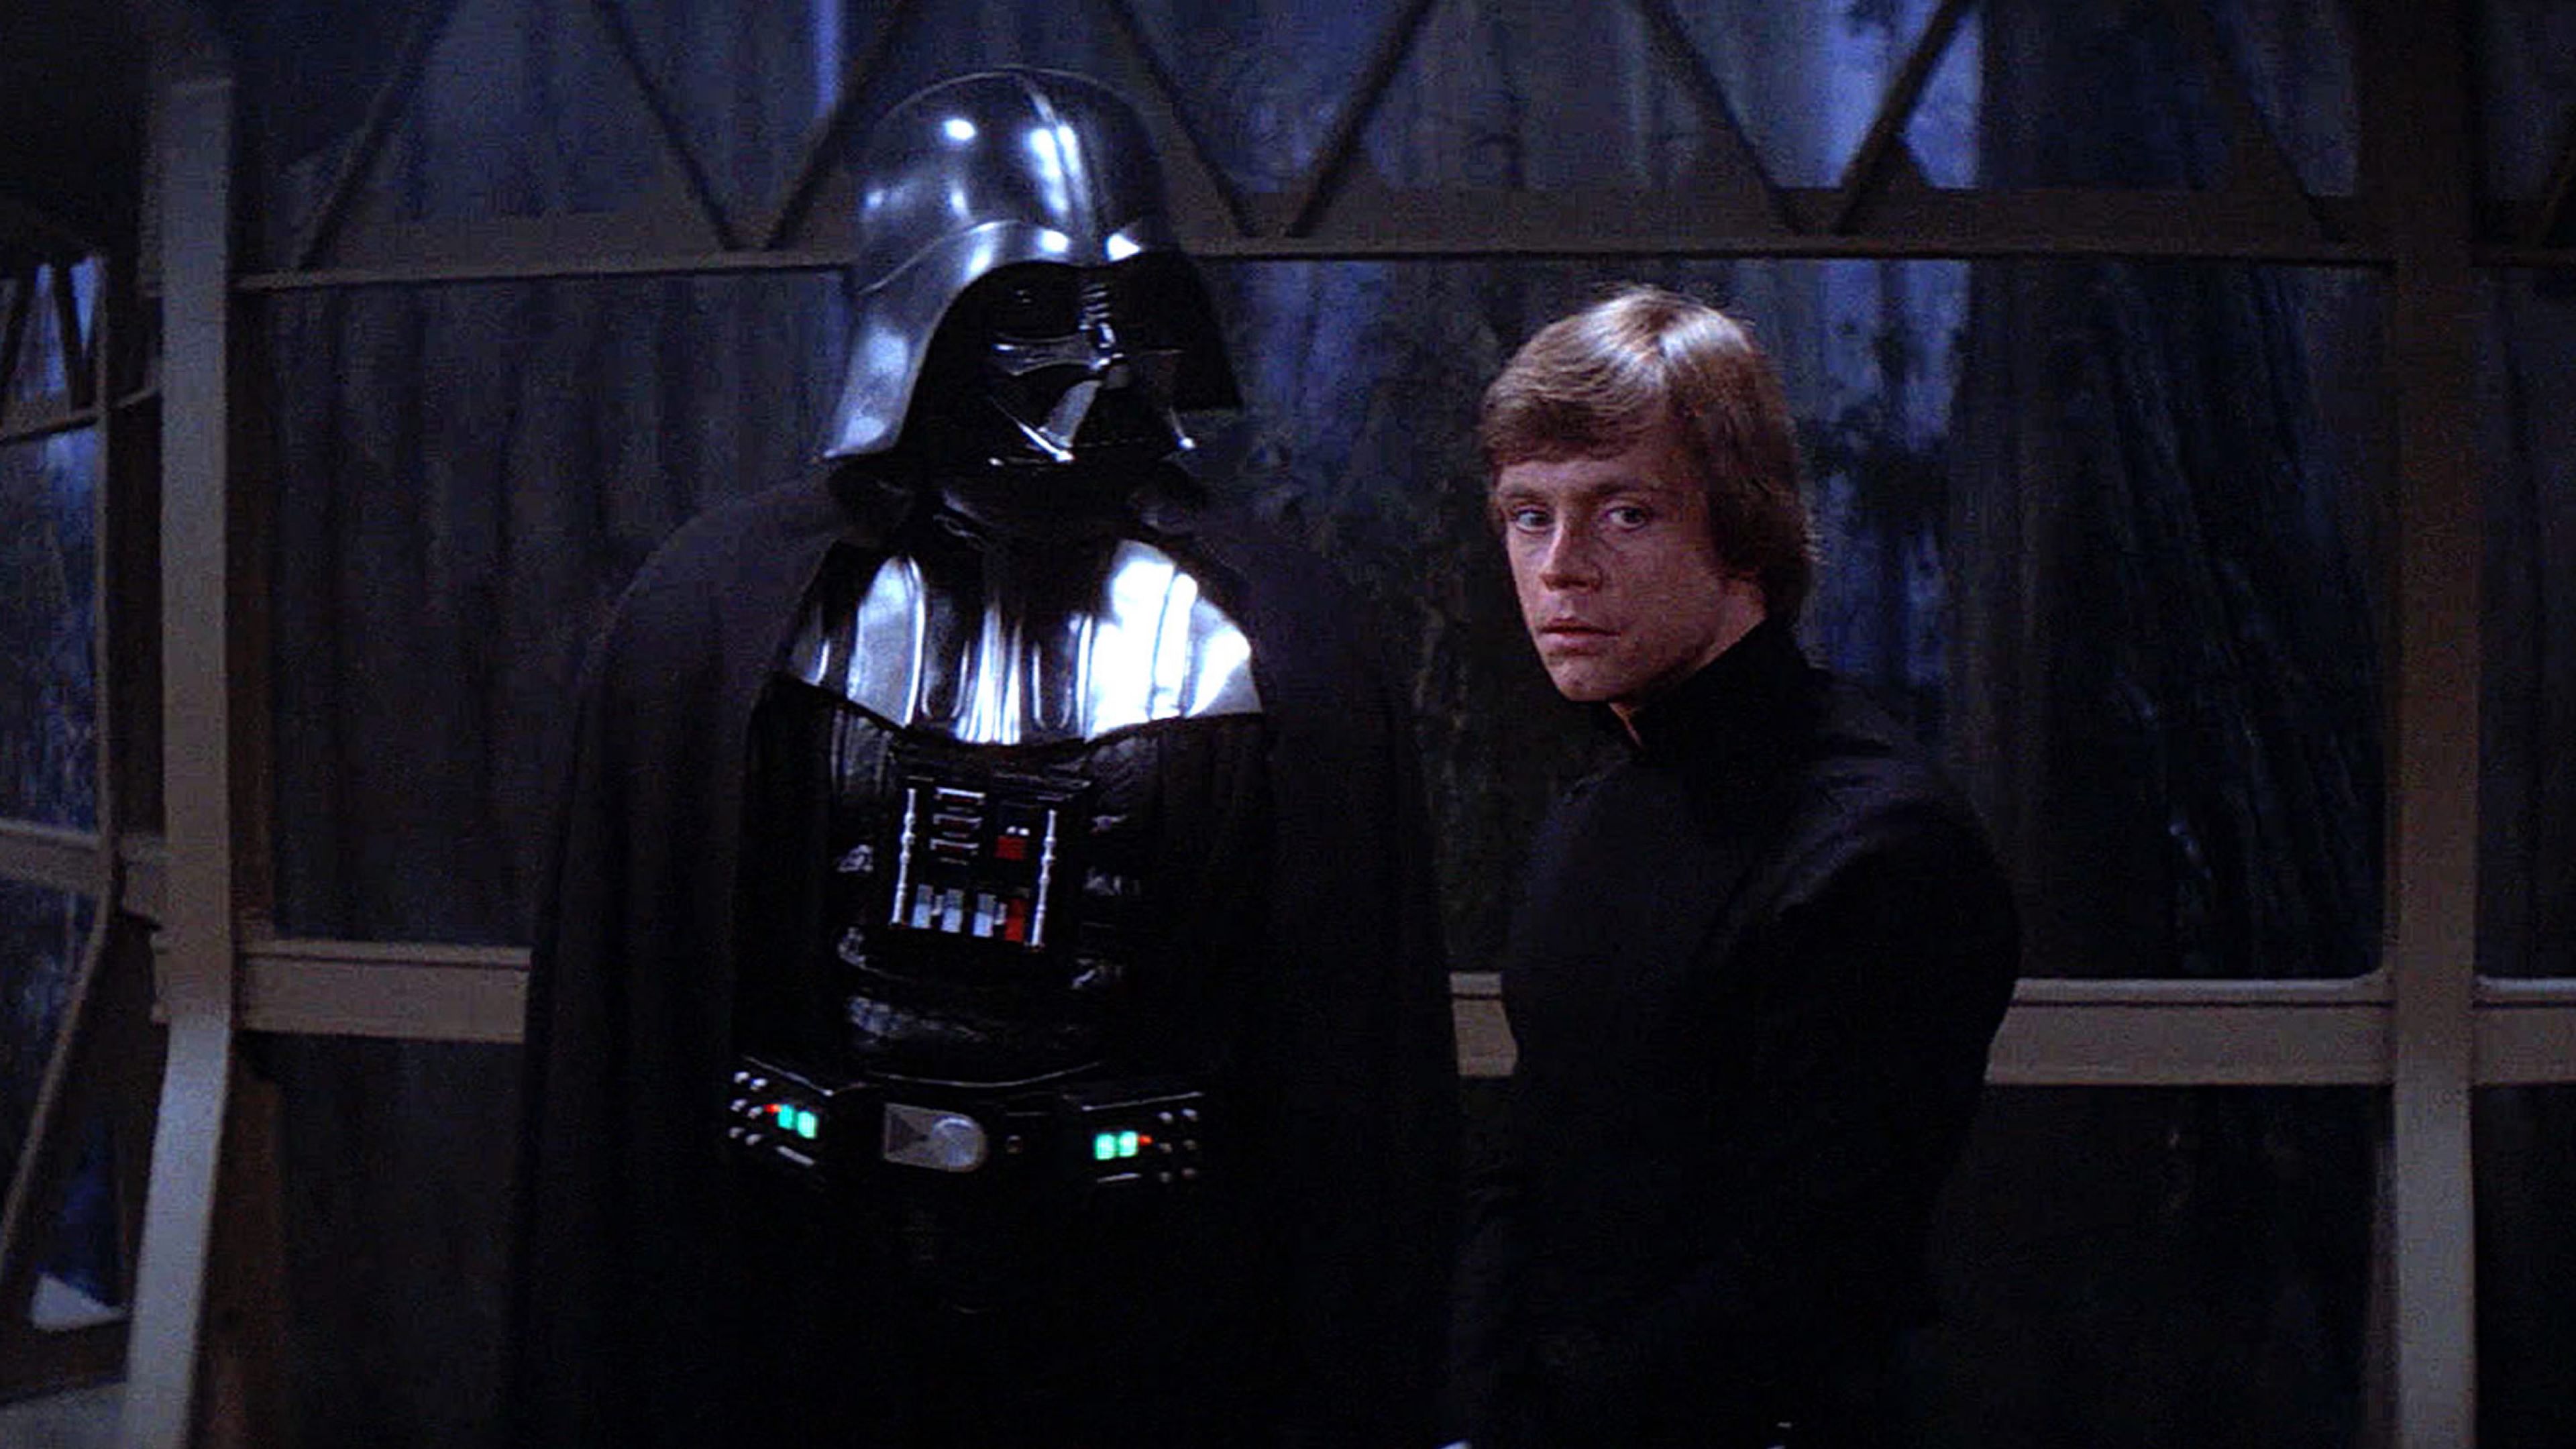 Star Wars episodio VI: El retorno del Jedi - Darth Vader y Luke Skywalker